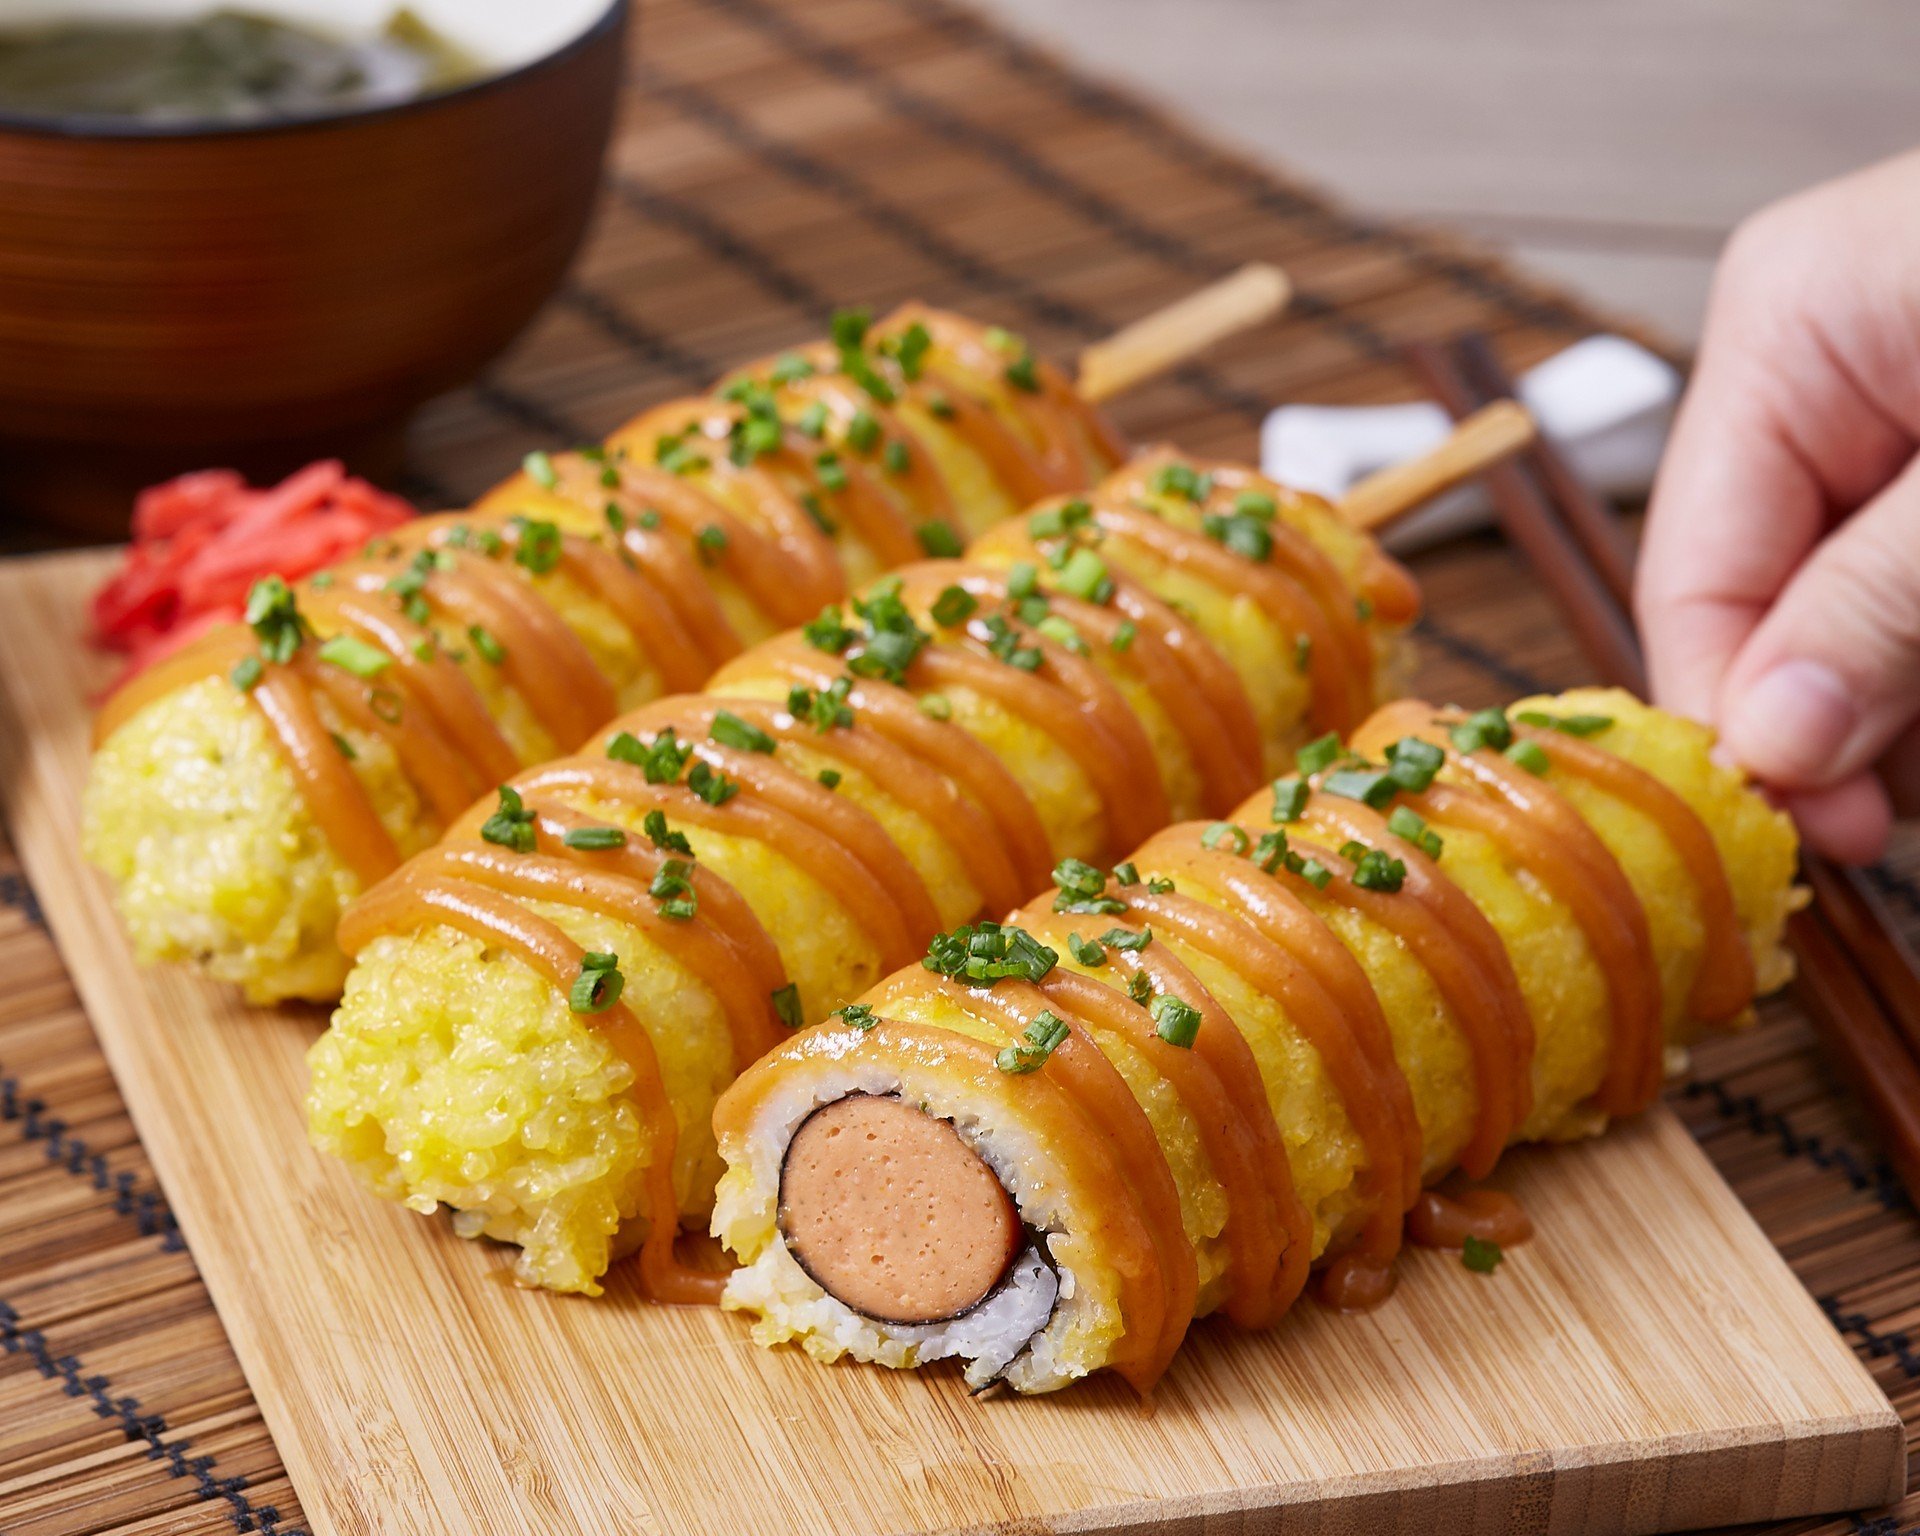 30 สูตร “เมนูอาหารญี่ปุ่น” ฉบับโฮมเมดสุดฟิน ที่คุณไม่ควรพลาด!